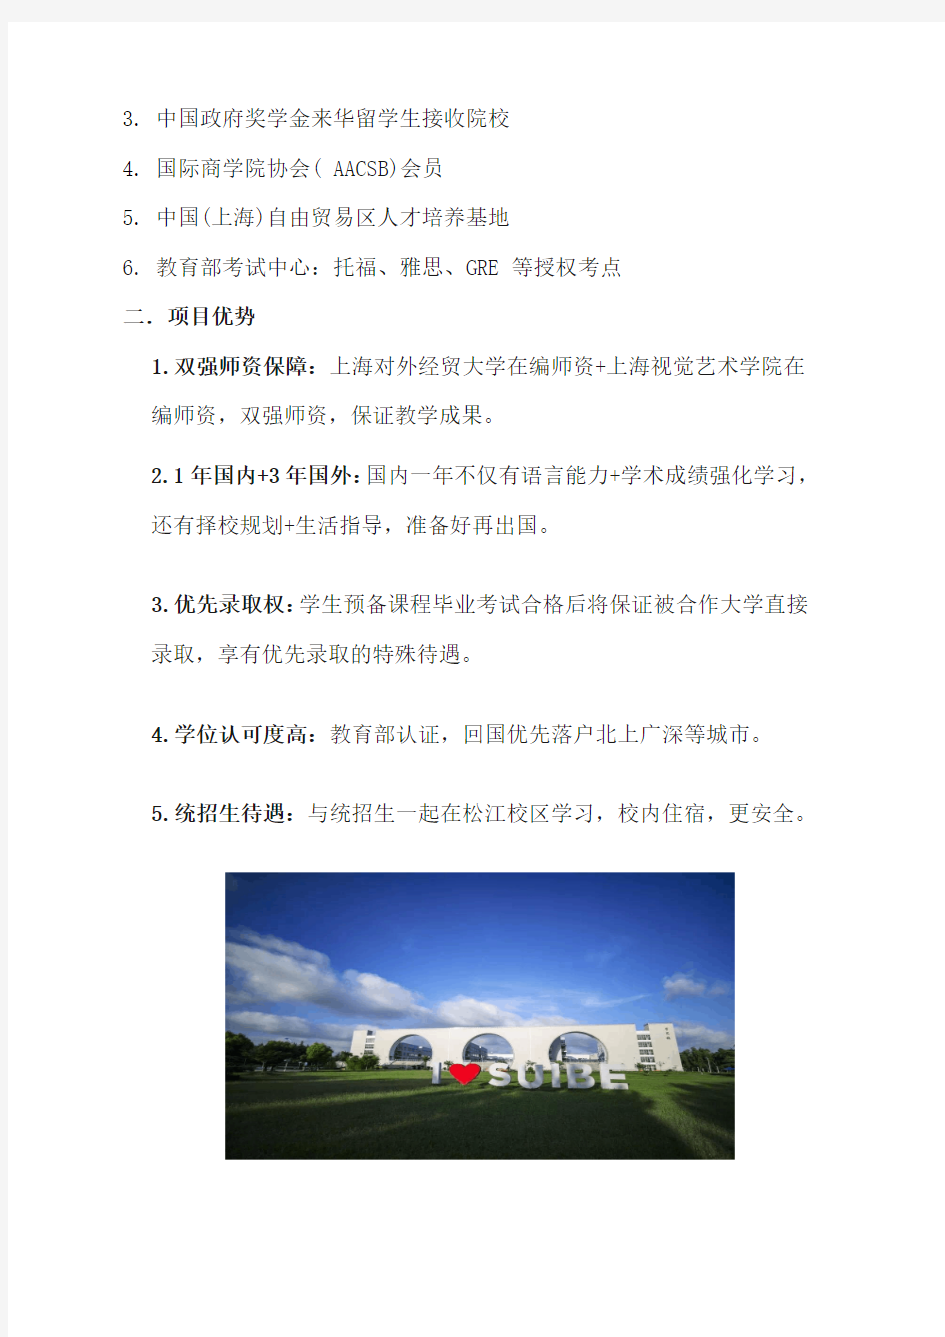 2020年上海对外经贸大学 IPC 1+3艺术本科项目